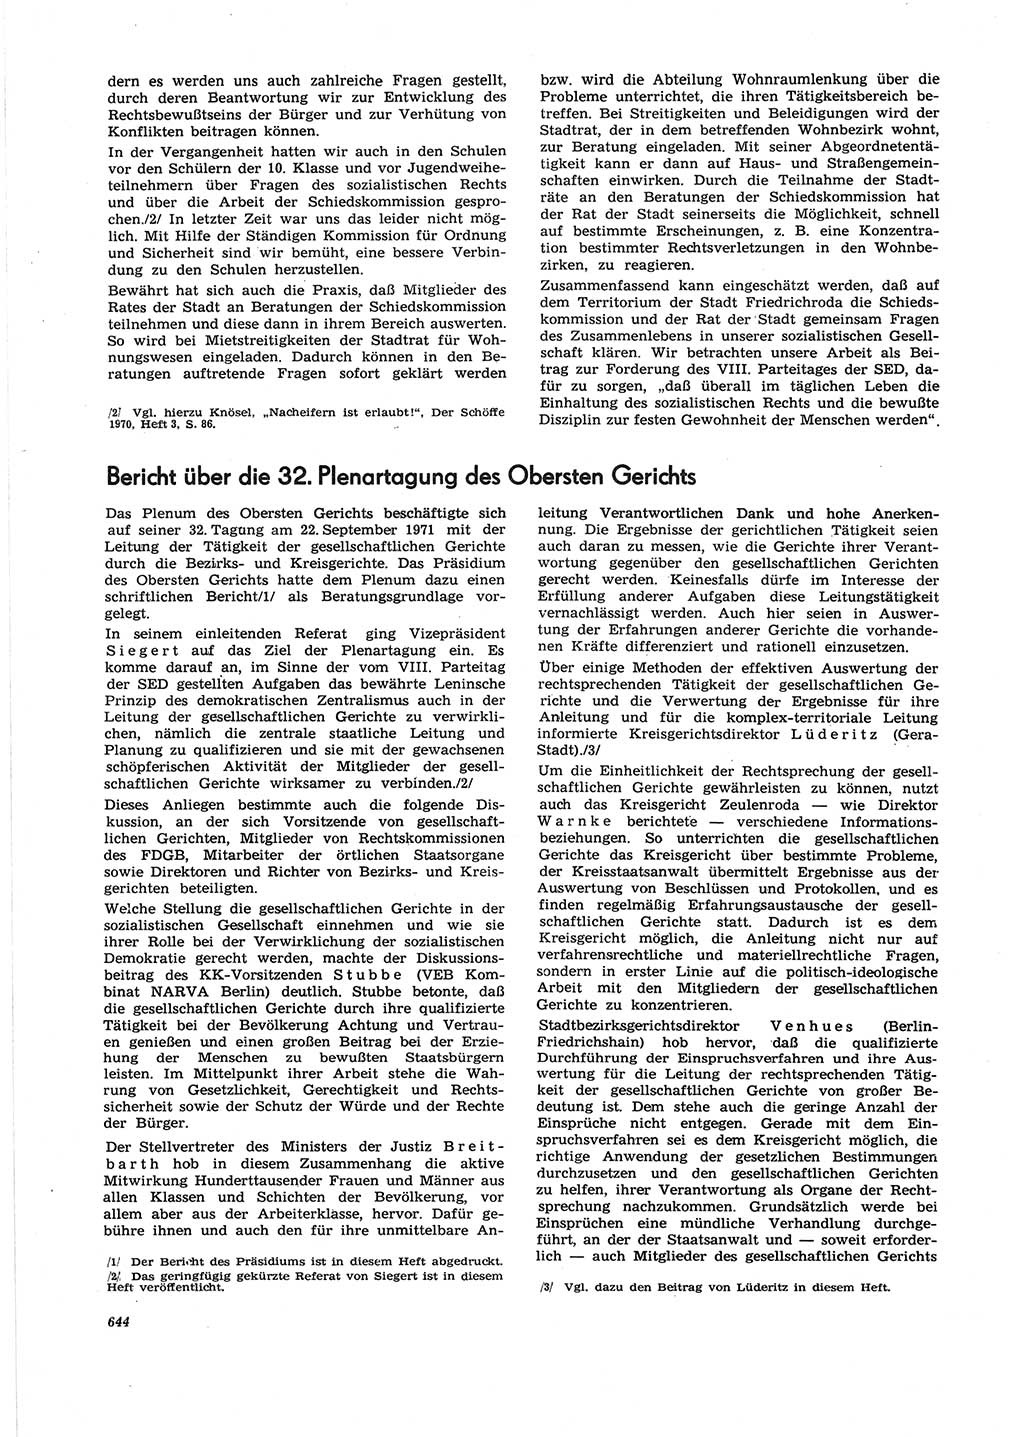 Neue Justiz (NJ), Zeitschrift für Recht und Rechtswissenschaft [Deutsche Demokratische Republik (DDR)], 25. Jahrgang 1971, Seite 644 (NJ DDR 1971, S. 644)